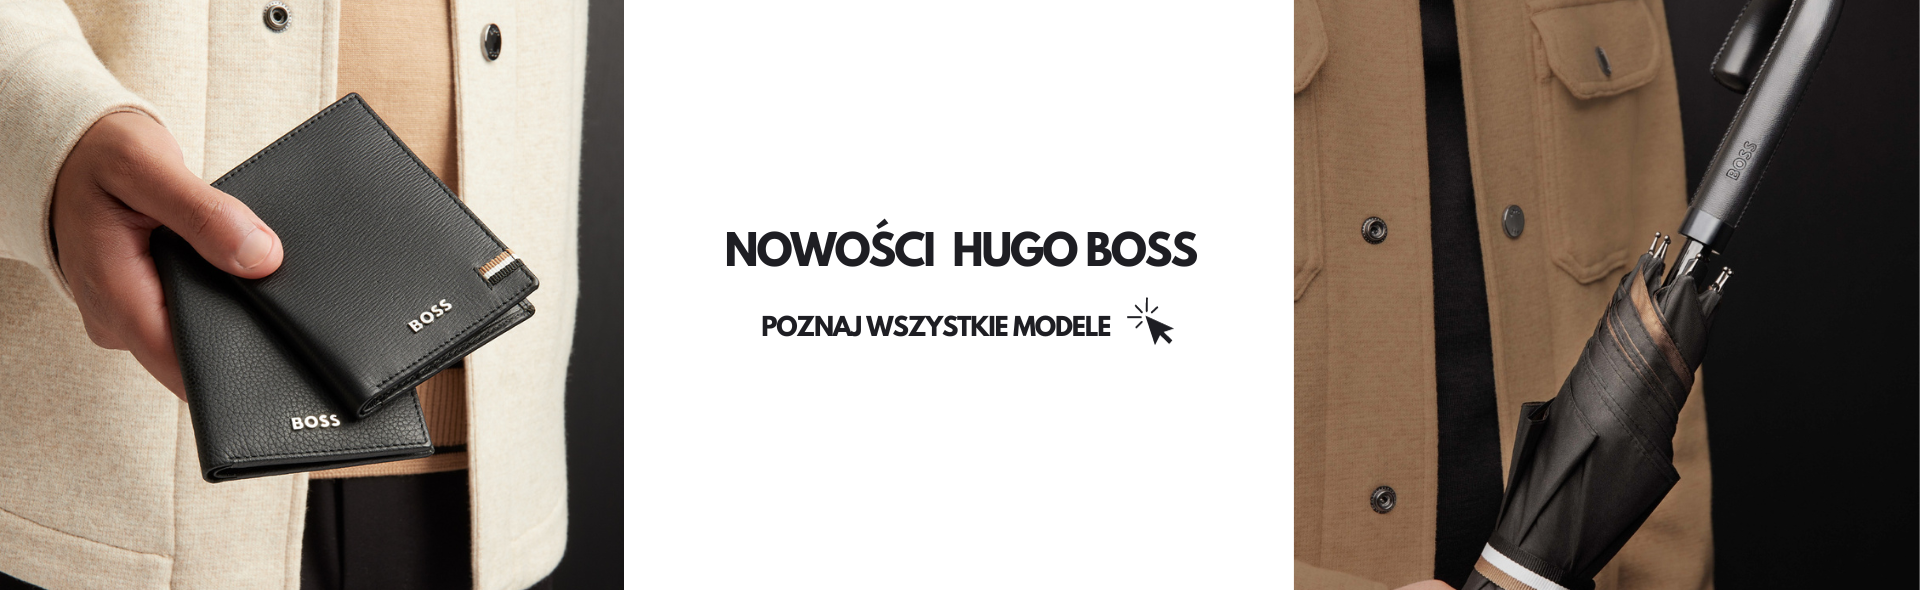 Hugo Boss nowości